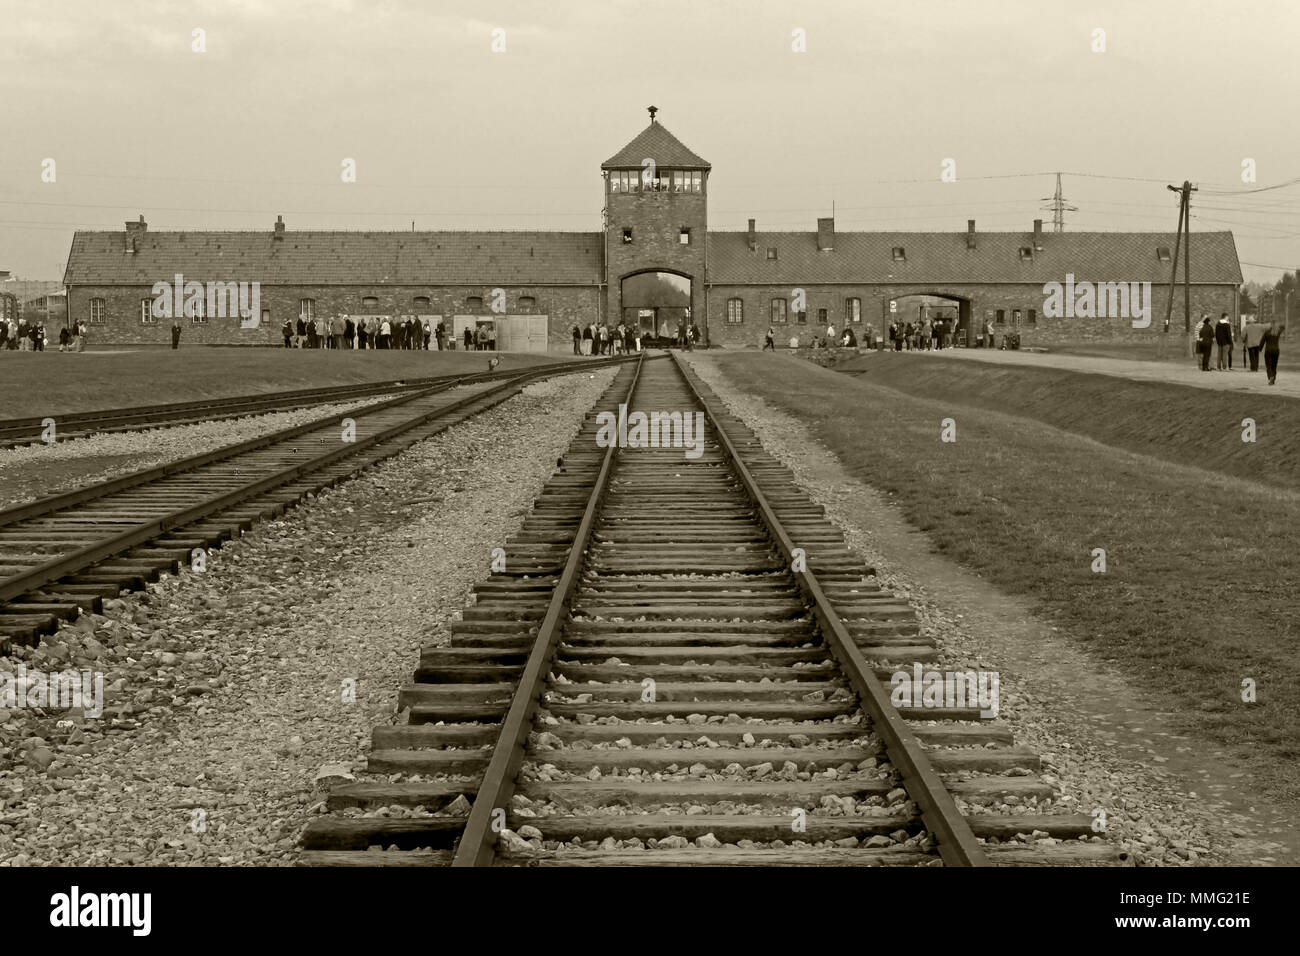 AUSCHWITZ, Polen, 12. Oktober 2013: Rampe Eingang zum Konzentrationslager Auschwitz Birkenau KZ, Schwarz, Weiß und Beige duplex Verarbeitung Fotografie, Polen Stockfoto